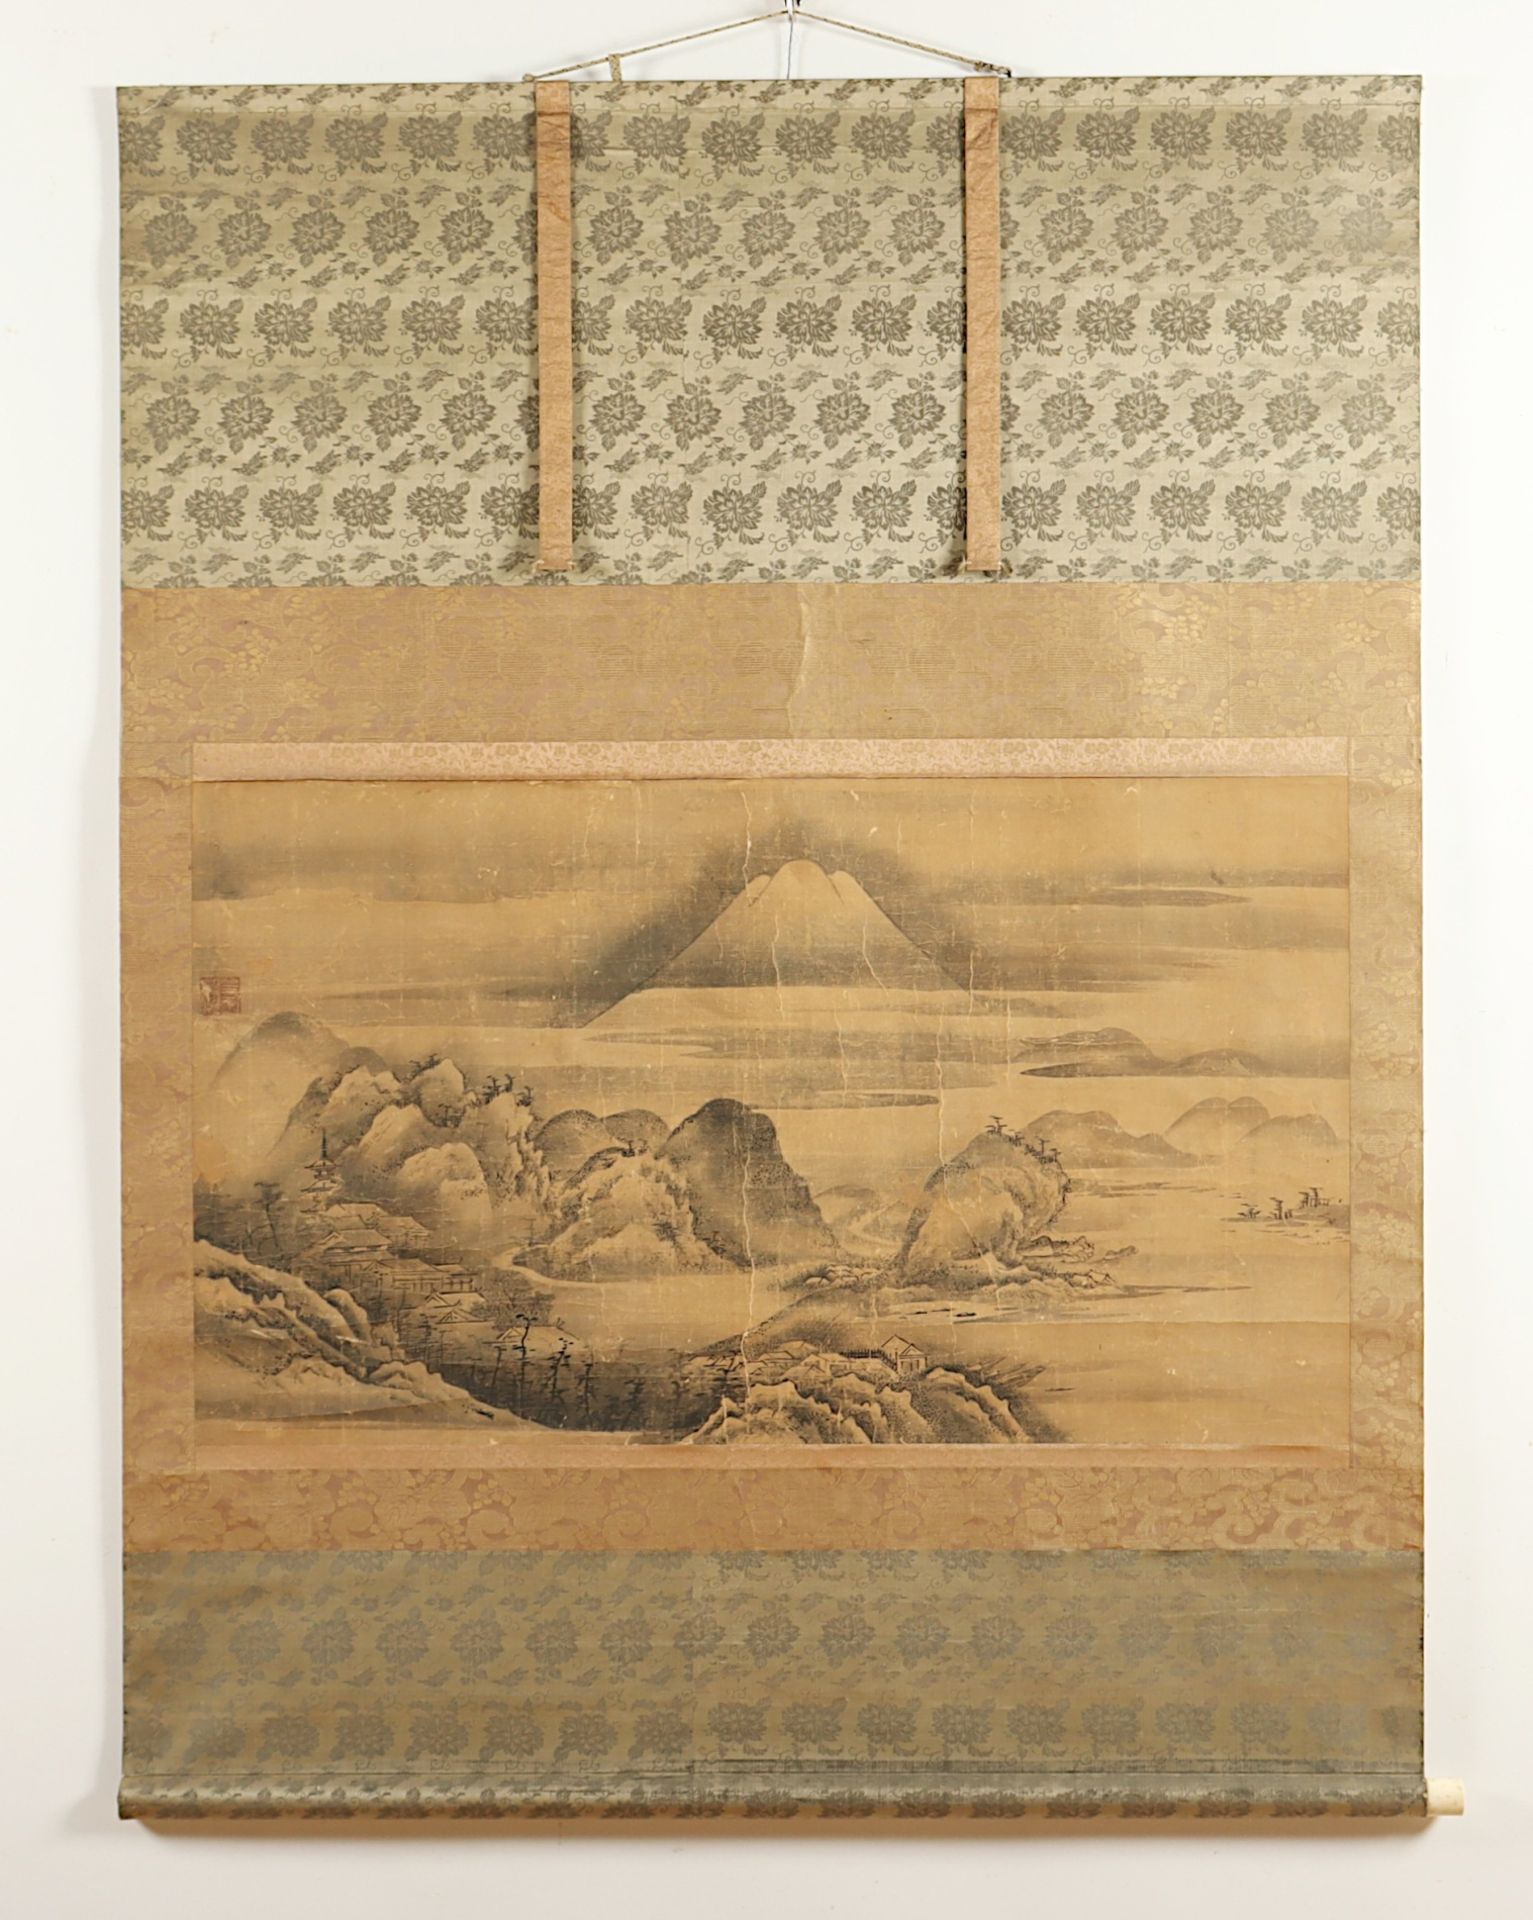 MALEREI, Tusche auf Papier, weite, unter Wolken liegende Landschaft mit Gebäuden und dem Berg Fuji,